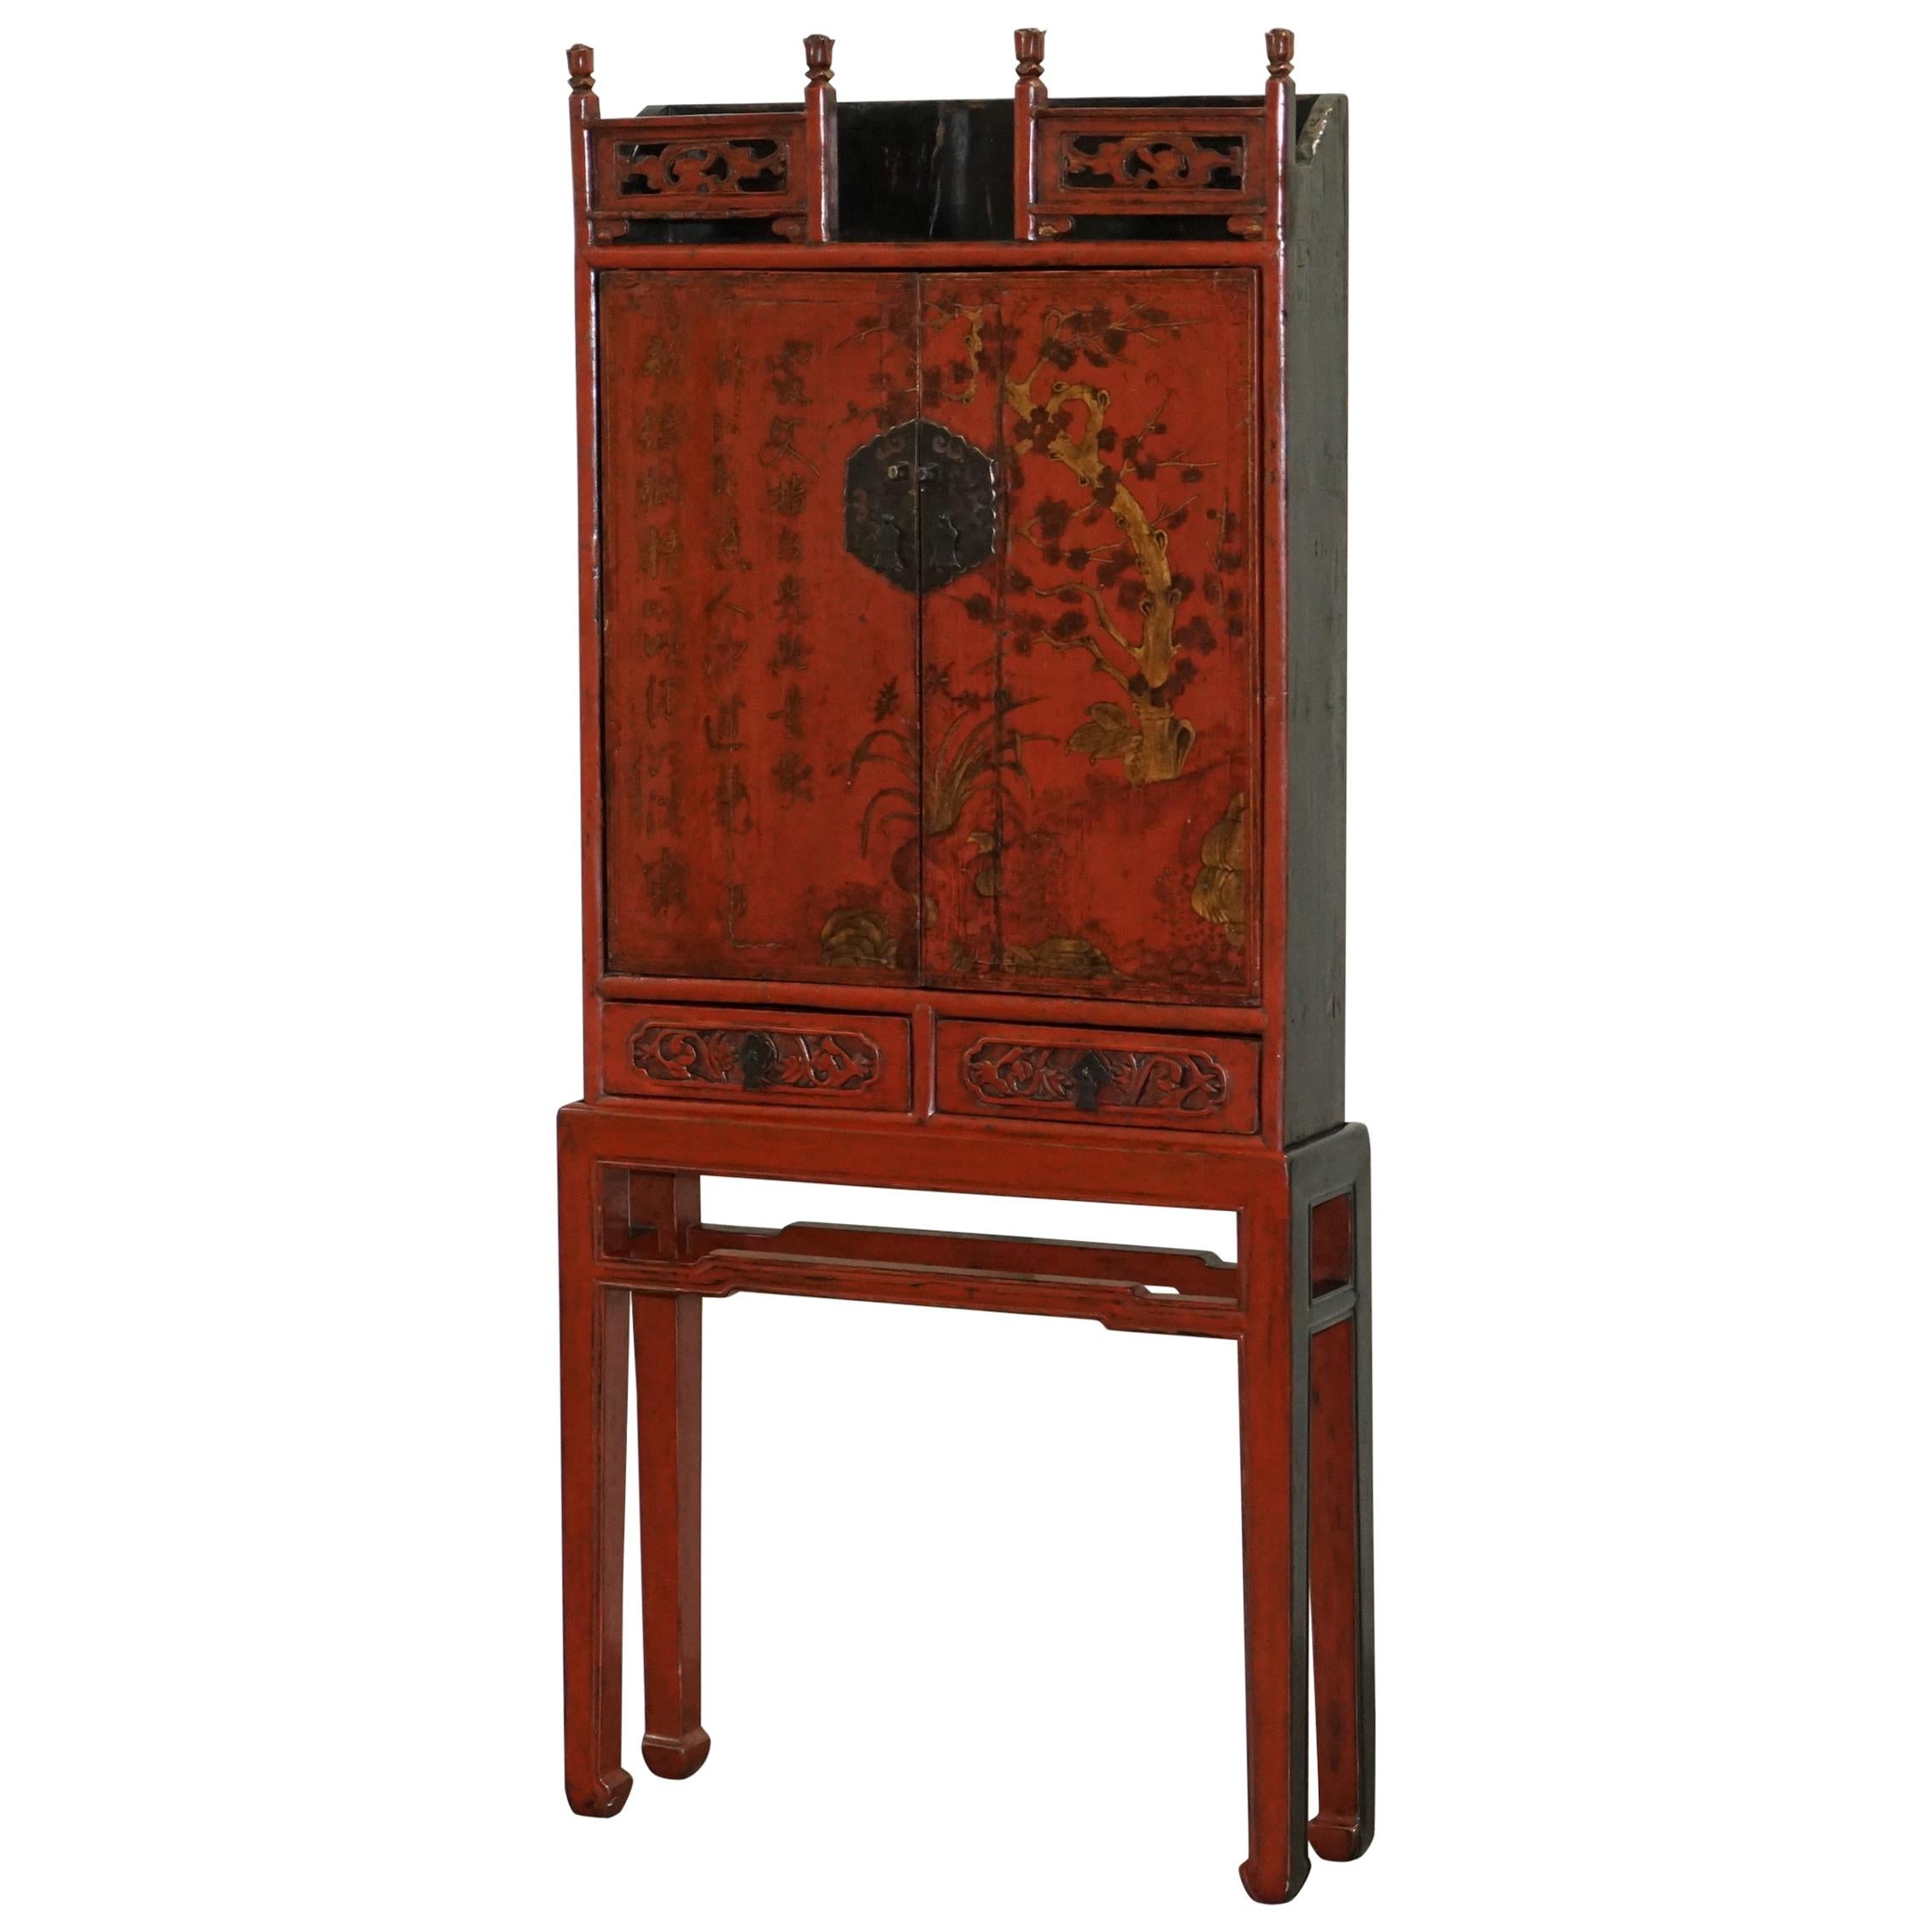 Seltene & exquisite antike 19. Jahrhundert chinesischen roten Lack Kabinett auf Stand